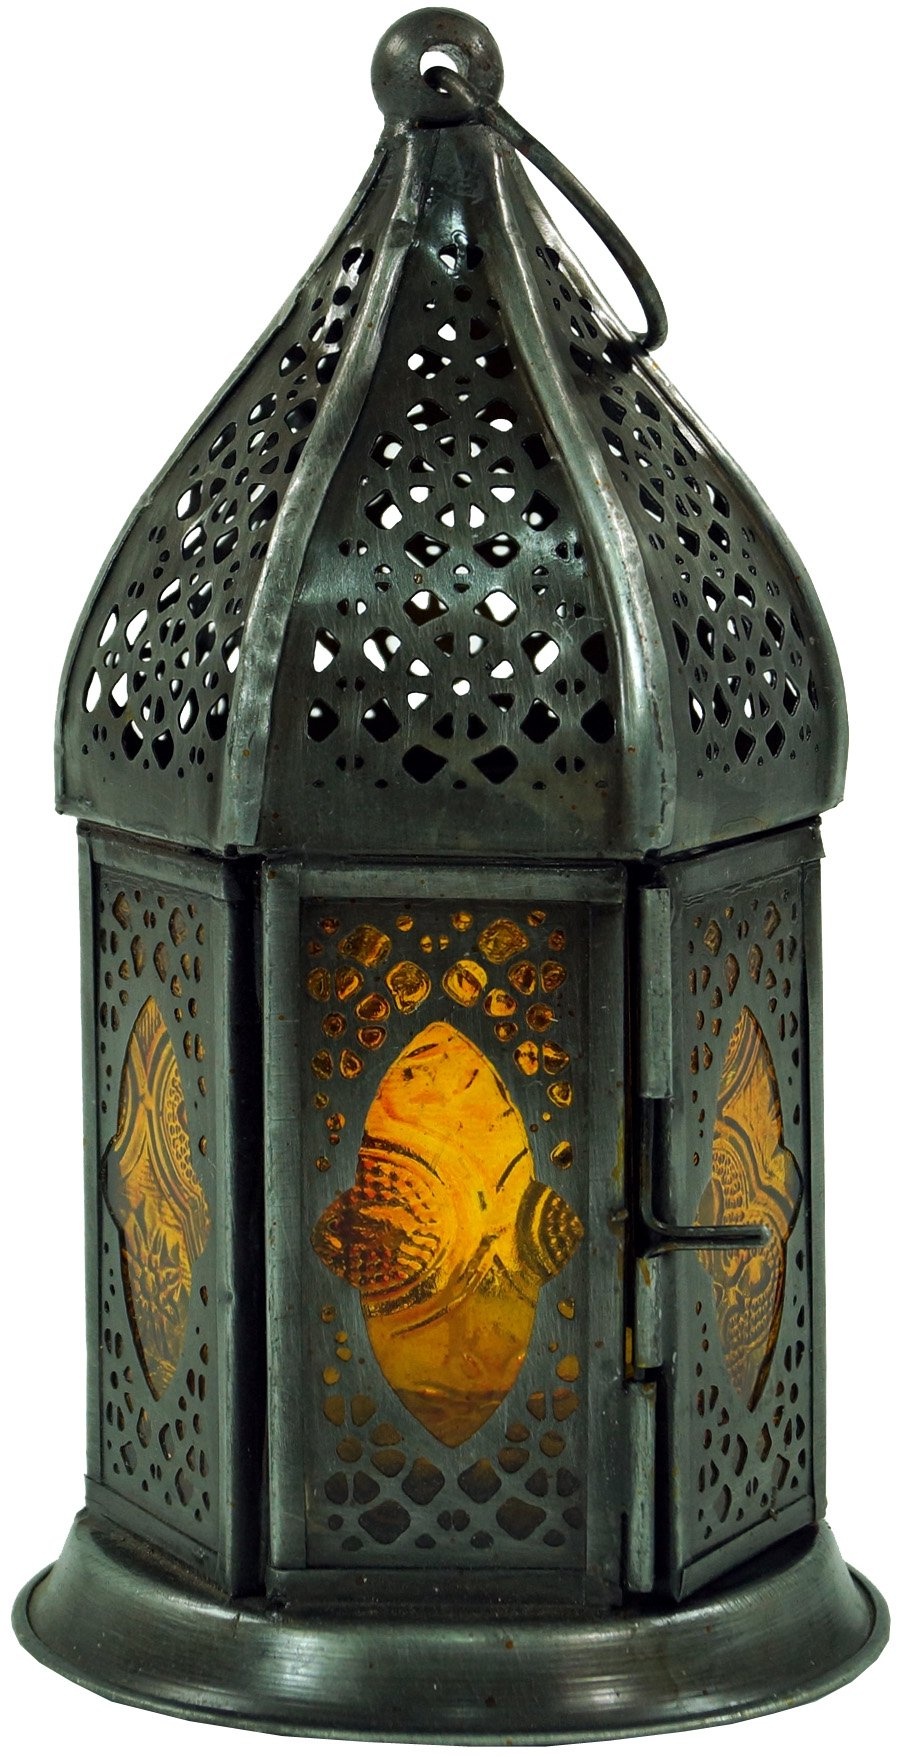 GURU SHOP Orientalische Metall/Glas Laterne in Marrokanischem Design, Windlicht, Gelb, Farbe: Gelb, 18x7x7 cm, Orientalische Laternen